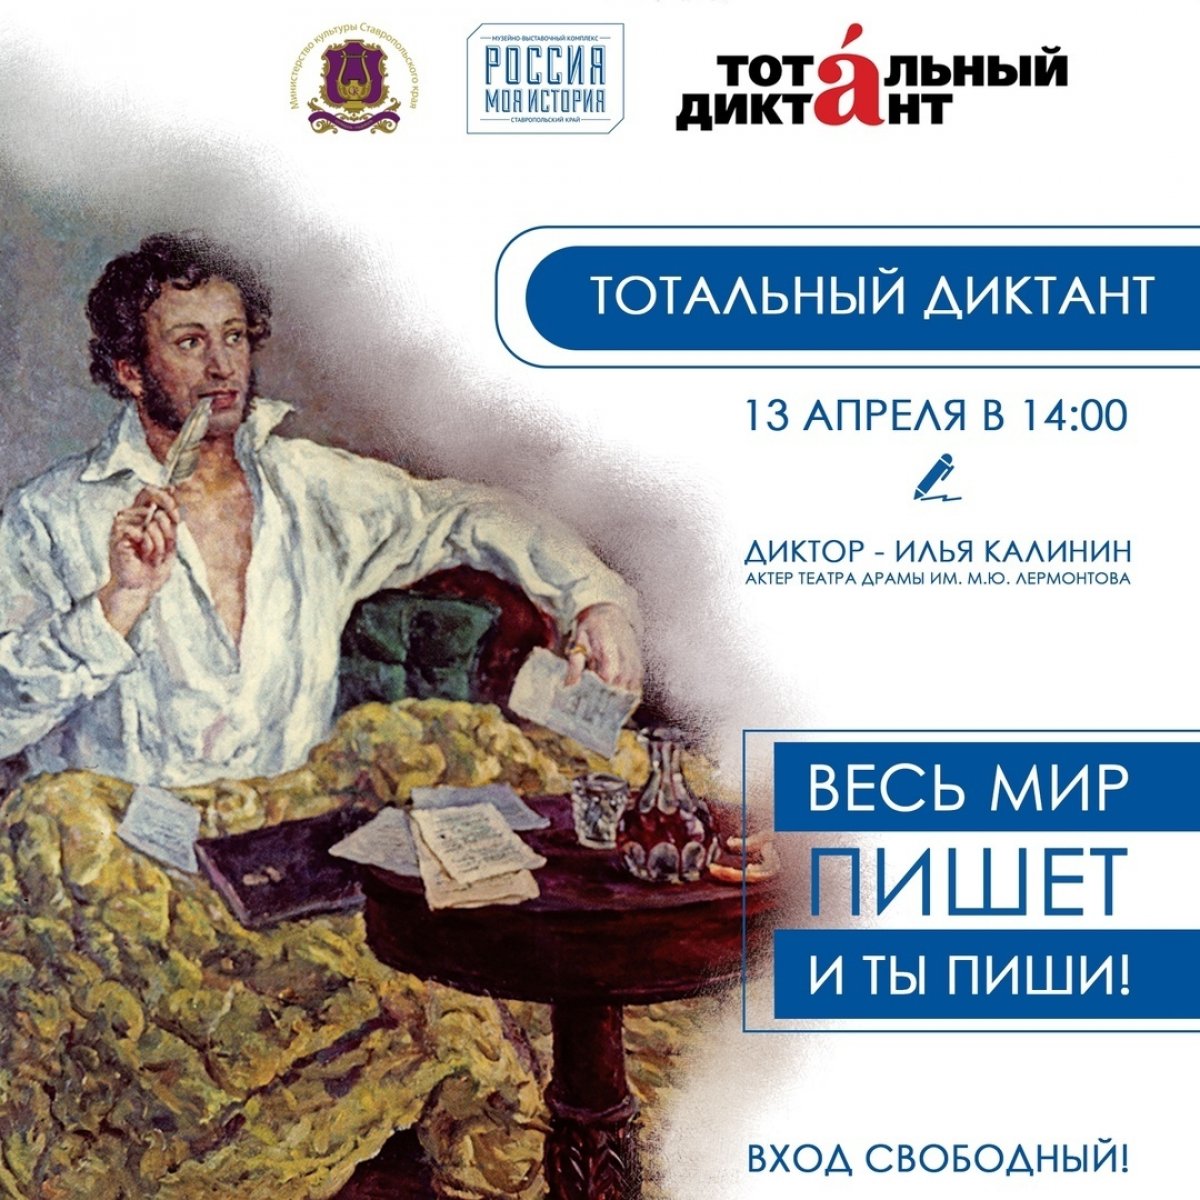 ✍🏼13 апреля в 14:00 пройдёт ежегодный тотальный диктант! Написать его можно будет в музейно-выставочном комплексе «Россия - Моя история».